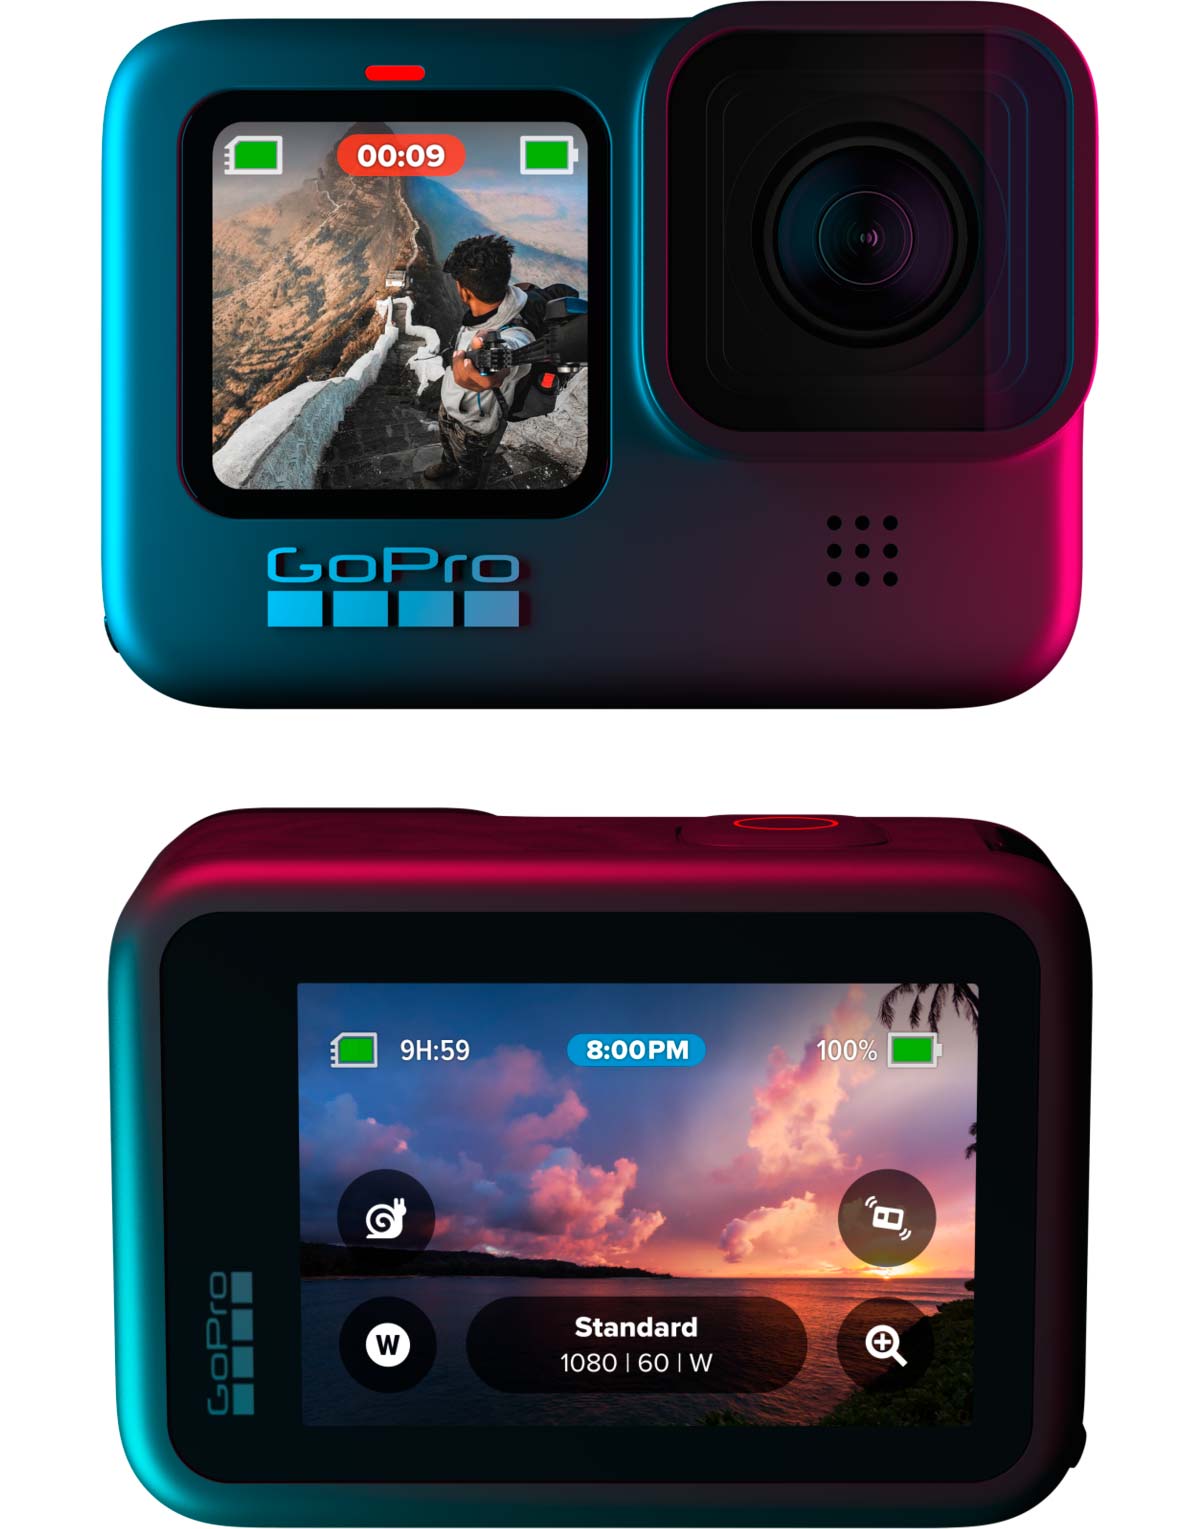 En TodoMountainBike: La GoPro Hero 9 Black ya está aquí: vídeo 5K, mejor estabilización de imagen, más autonomía y otras novedades